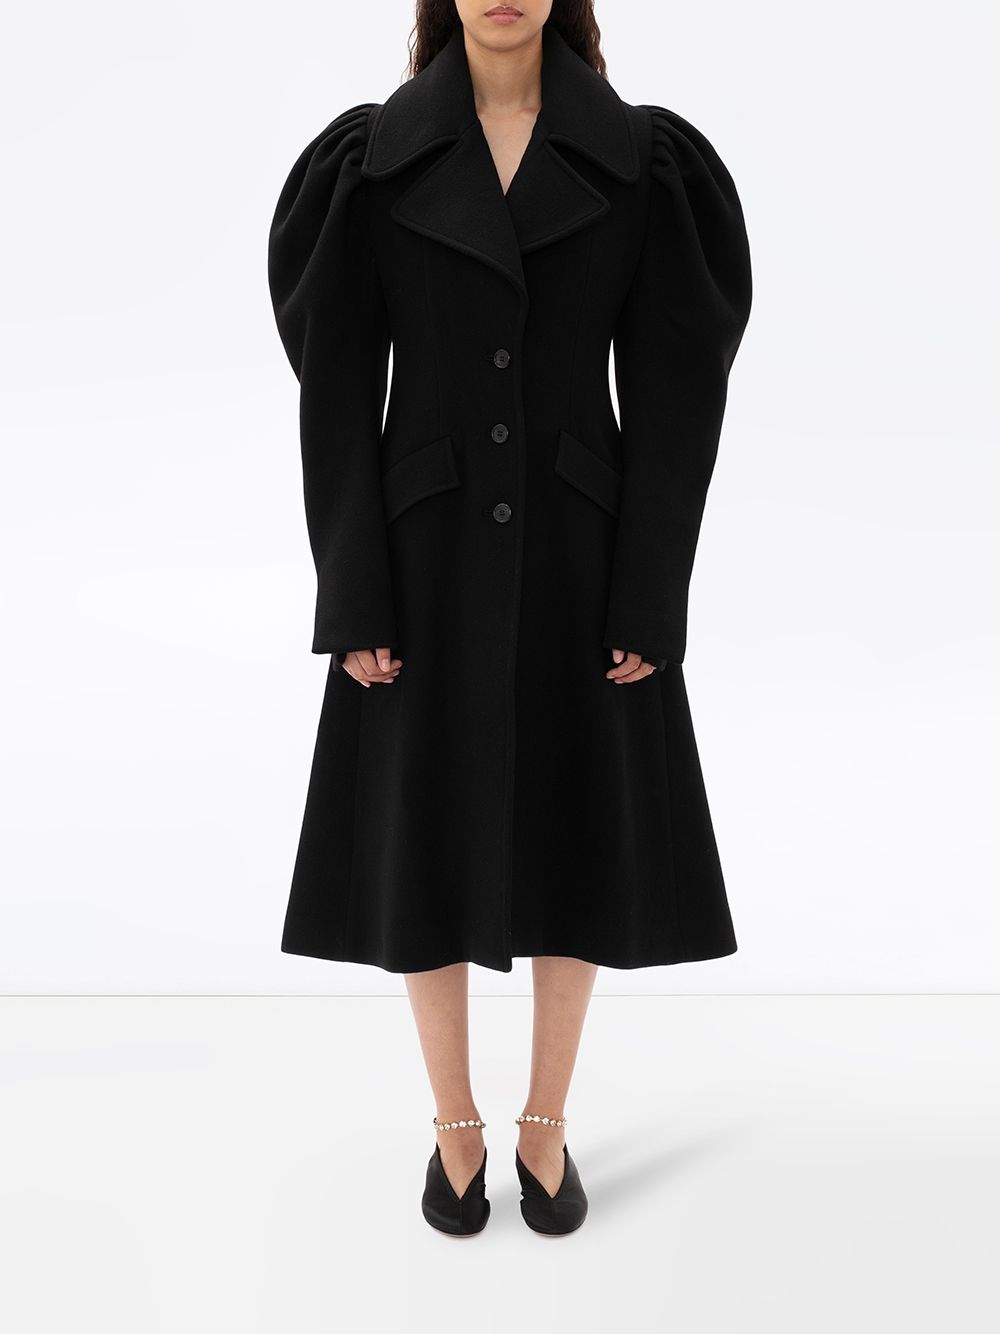 Блузы платья и пальто с объемными рукавами  главный тренд осени 2020